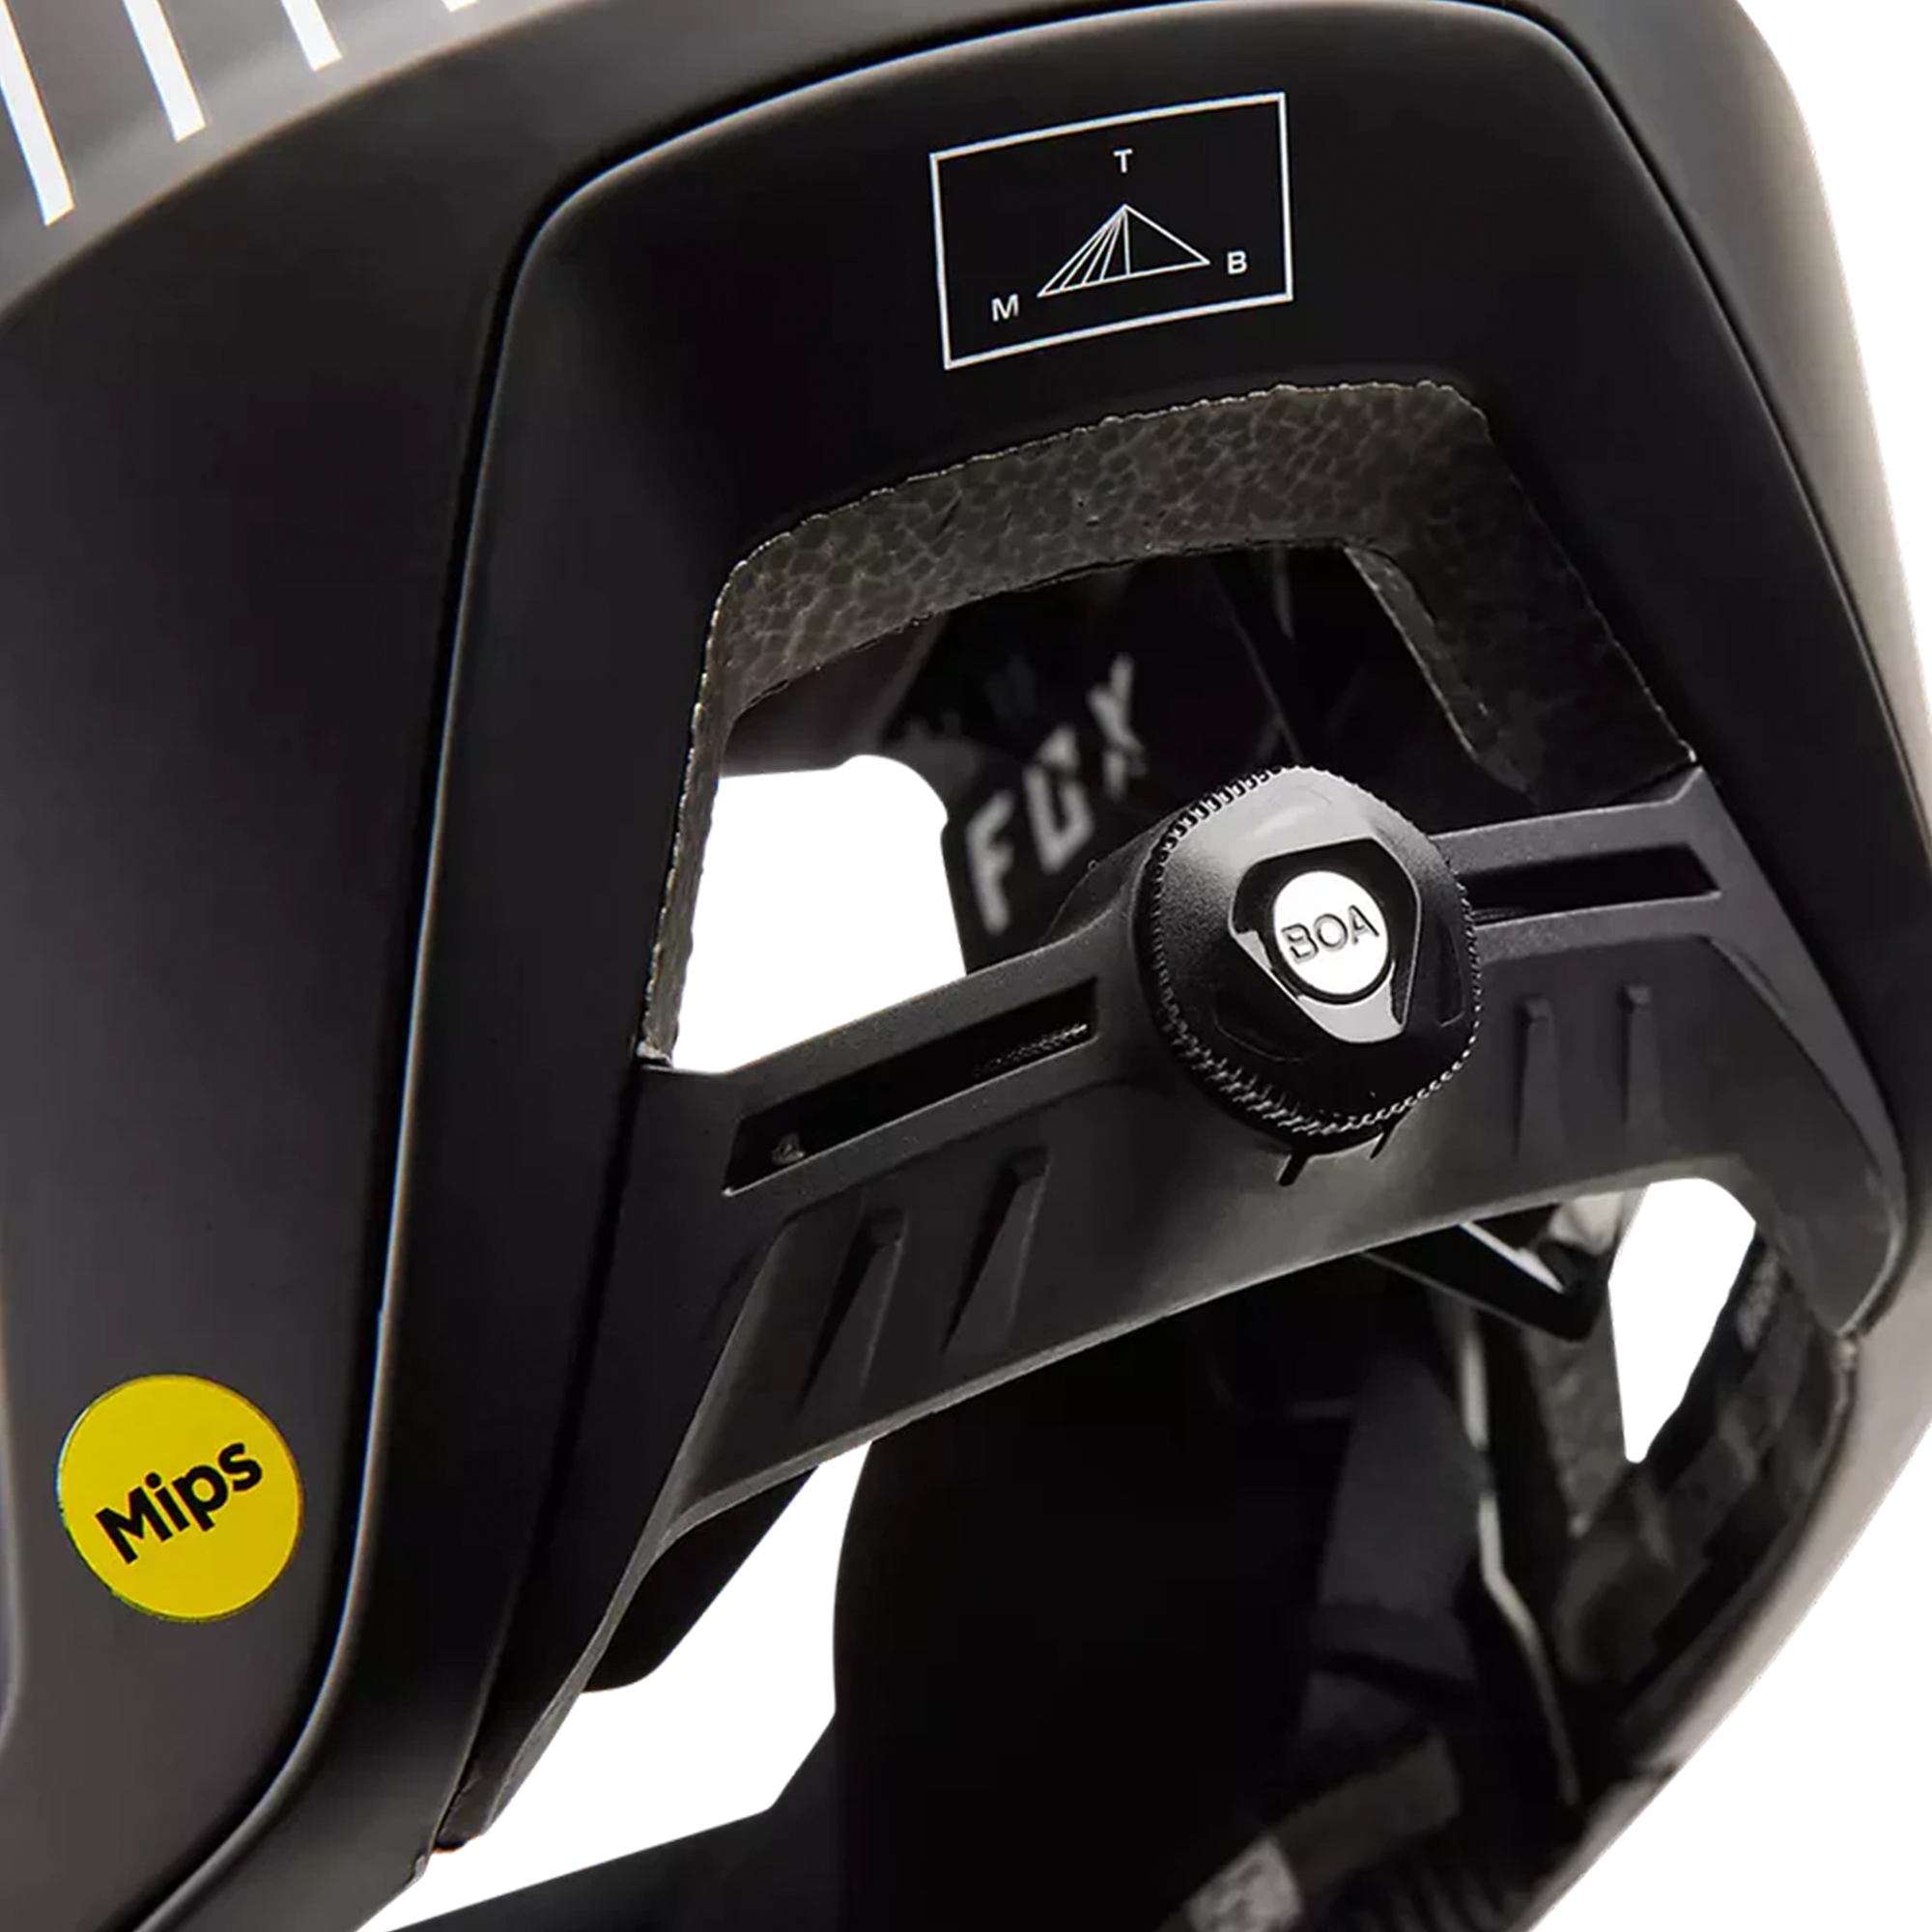 Fox ProFrame RS MASH Full Face MIPS Helmet